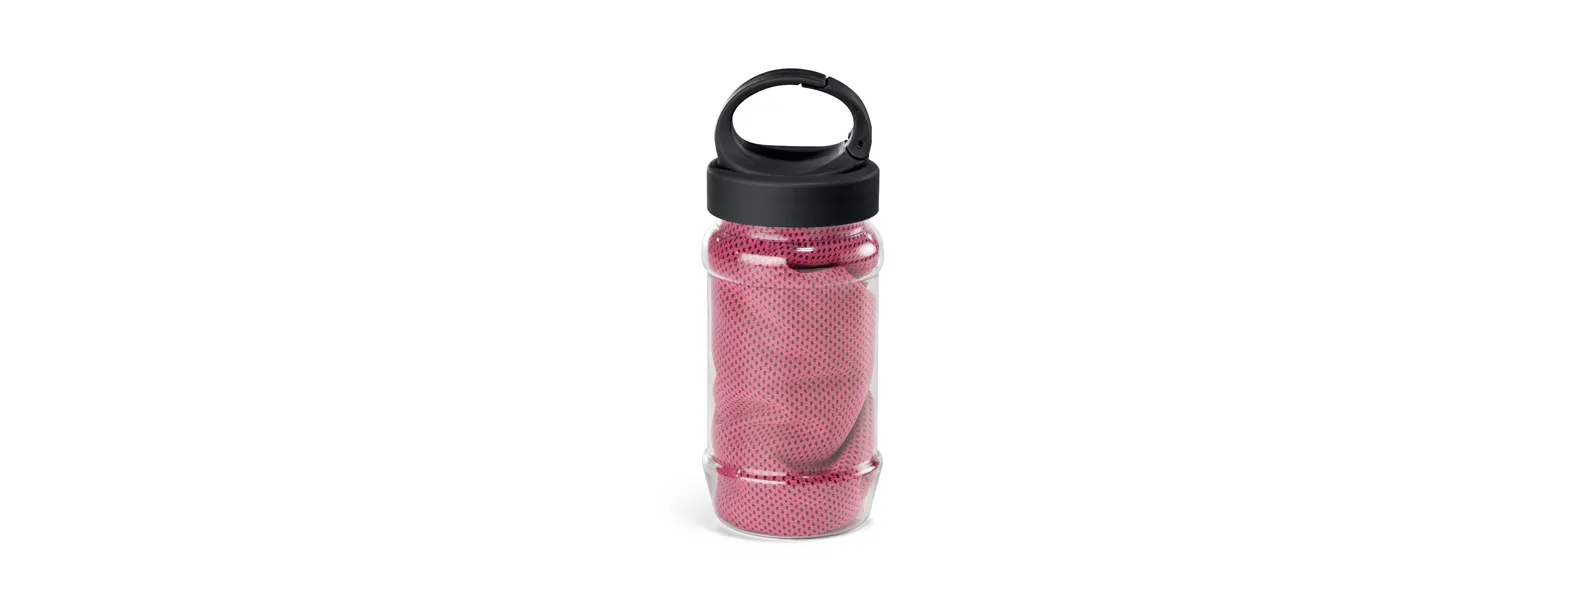 Toalha para esporte rosa com garrafa em PP e PET. Toalha refrescante, quando molhada permanece fria durante horas. Se aquecer, basta balançar reativando sua frescura. Reutilizável e lavável à máquina. Capacidade da garrafa: 440ml